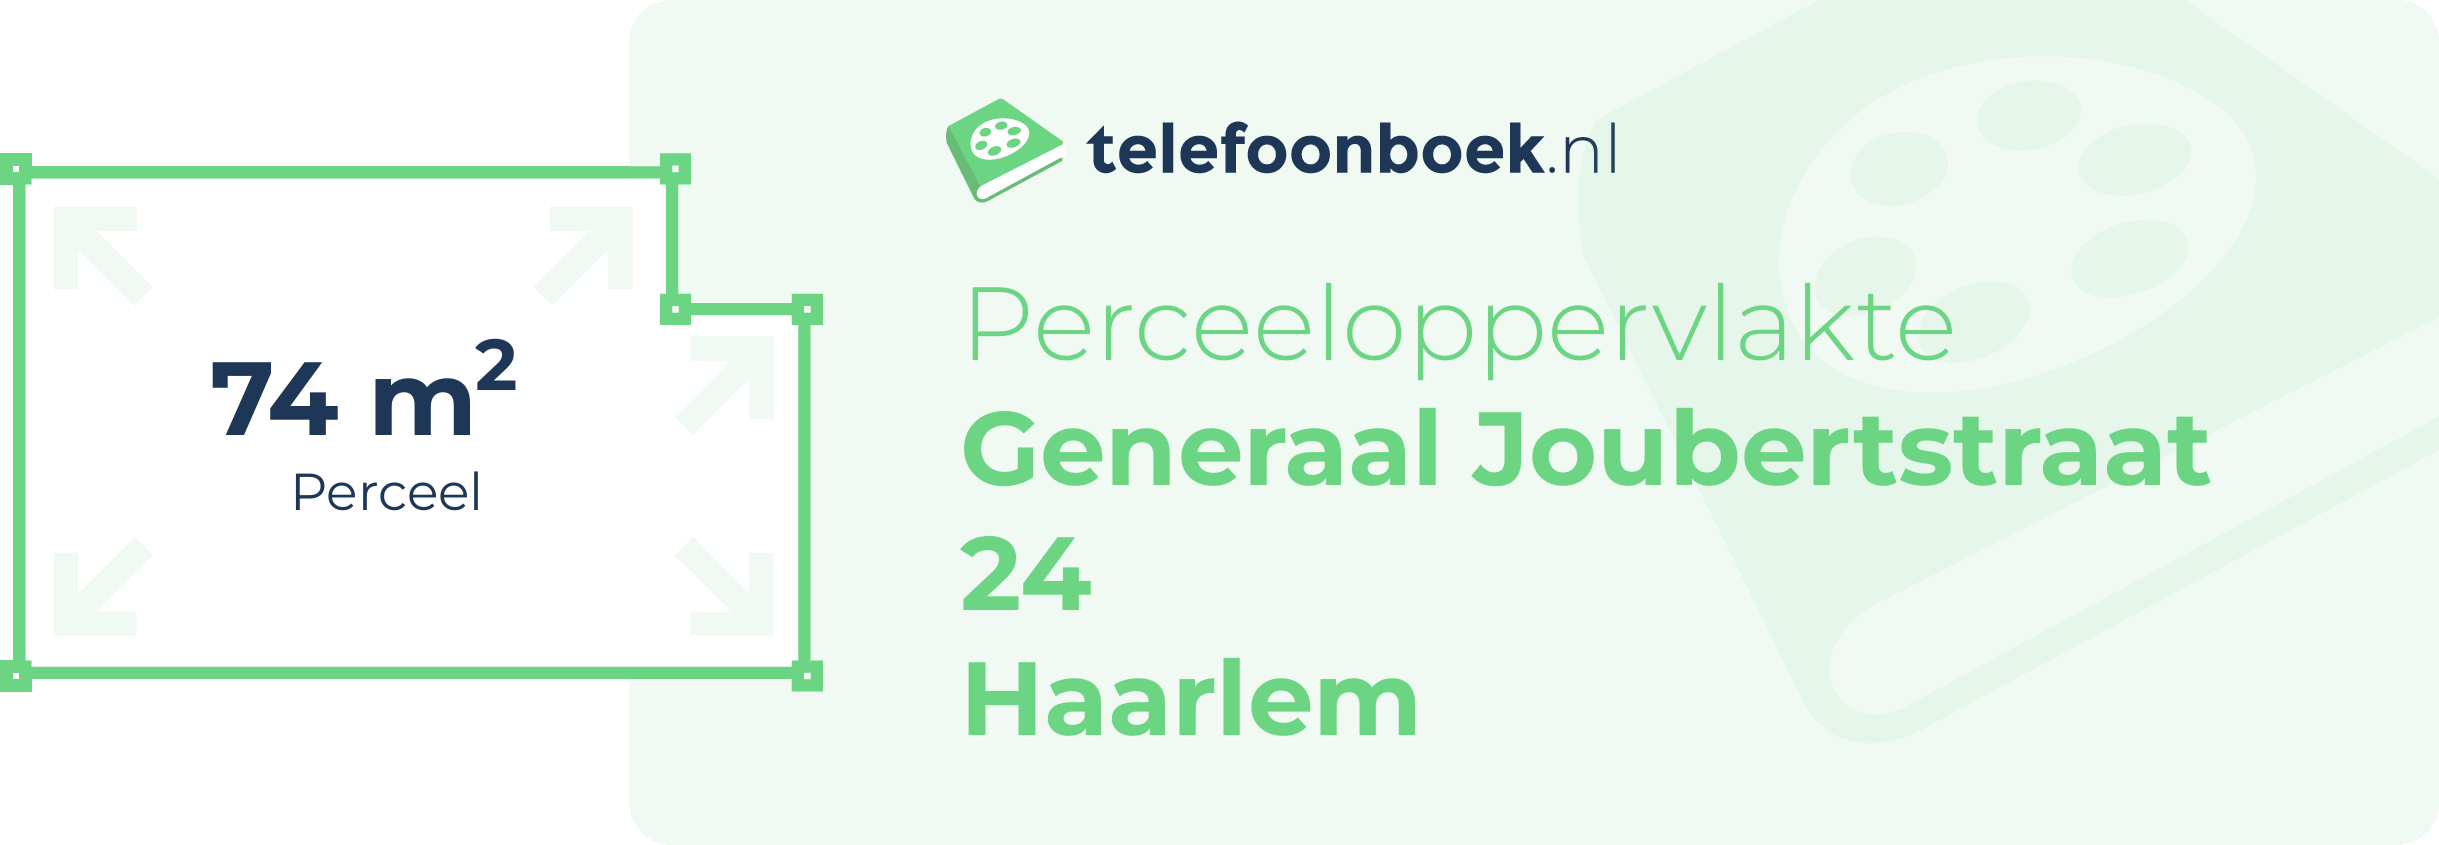 Perceeloppervlakte Generaal Joubertstraat 24 Haarlem